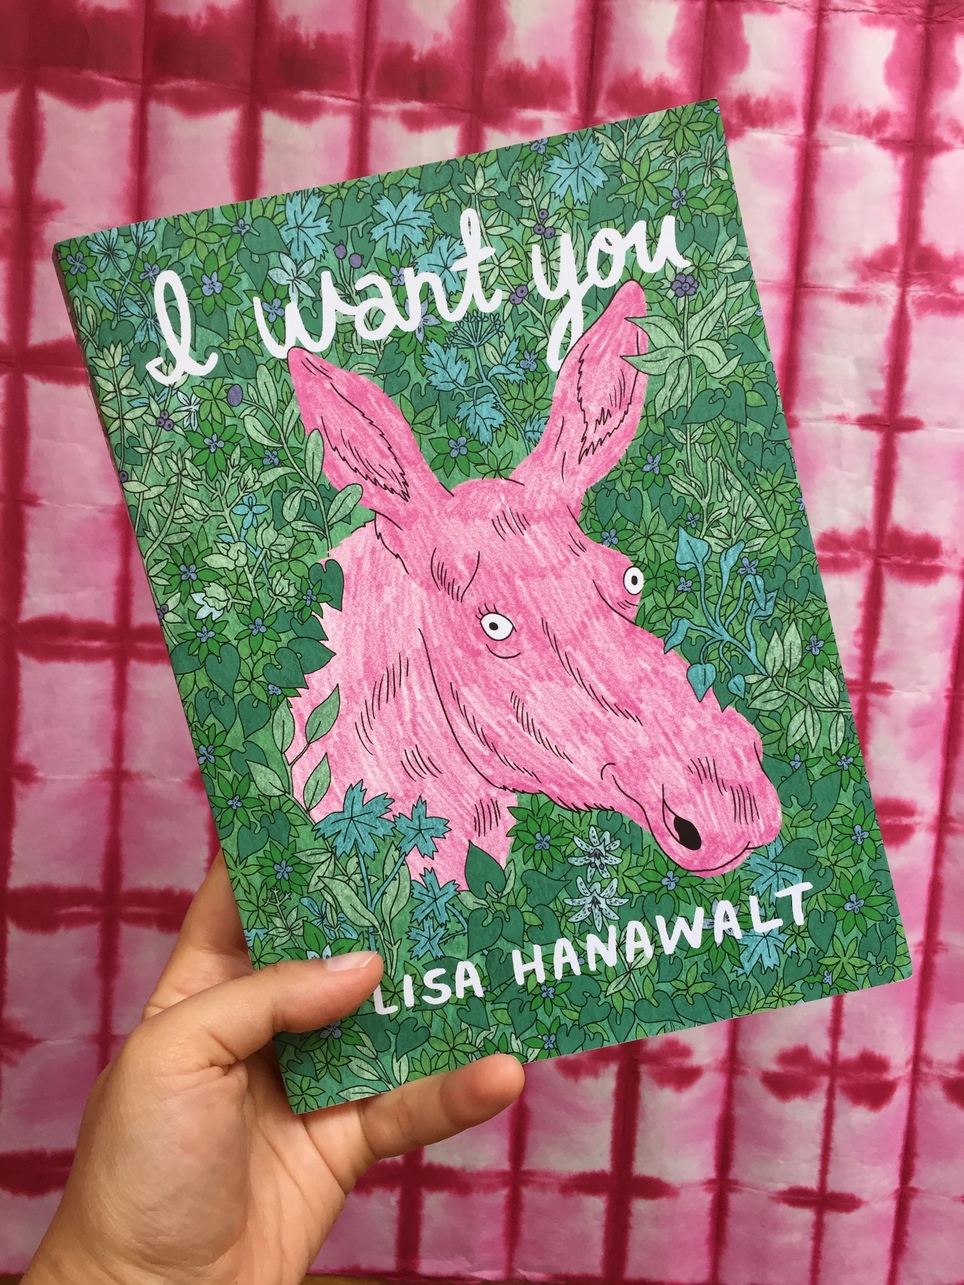 New D+Q: I Want You by Lisa Hanawalt